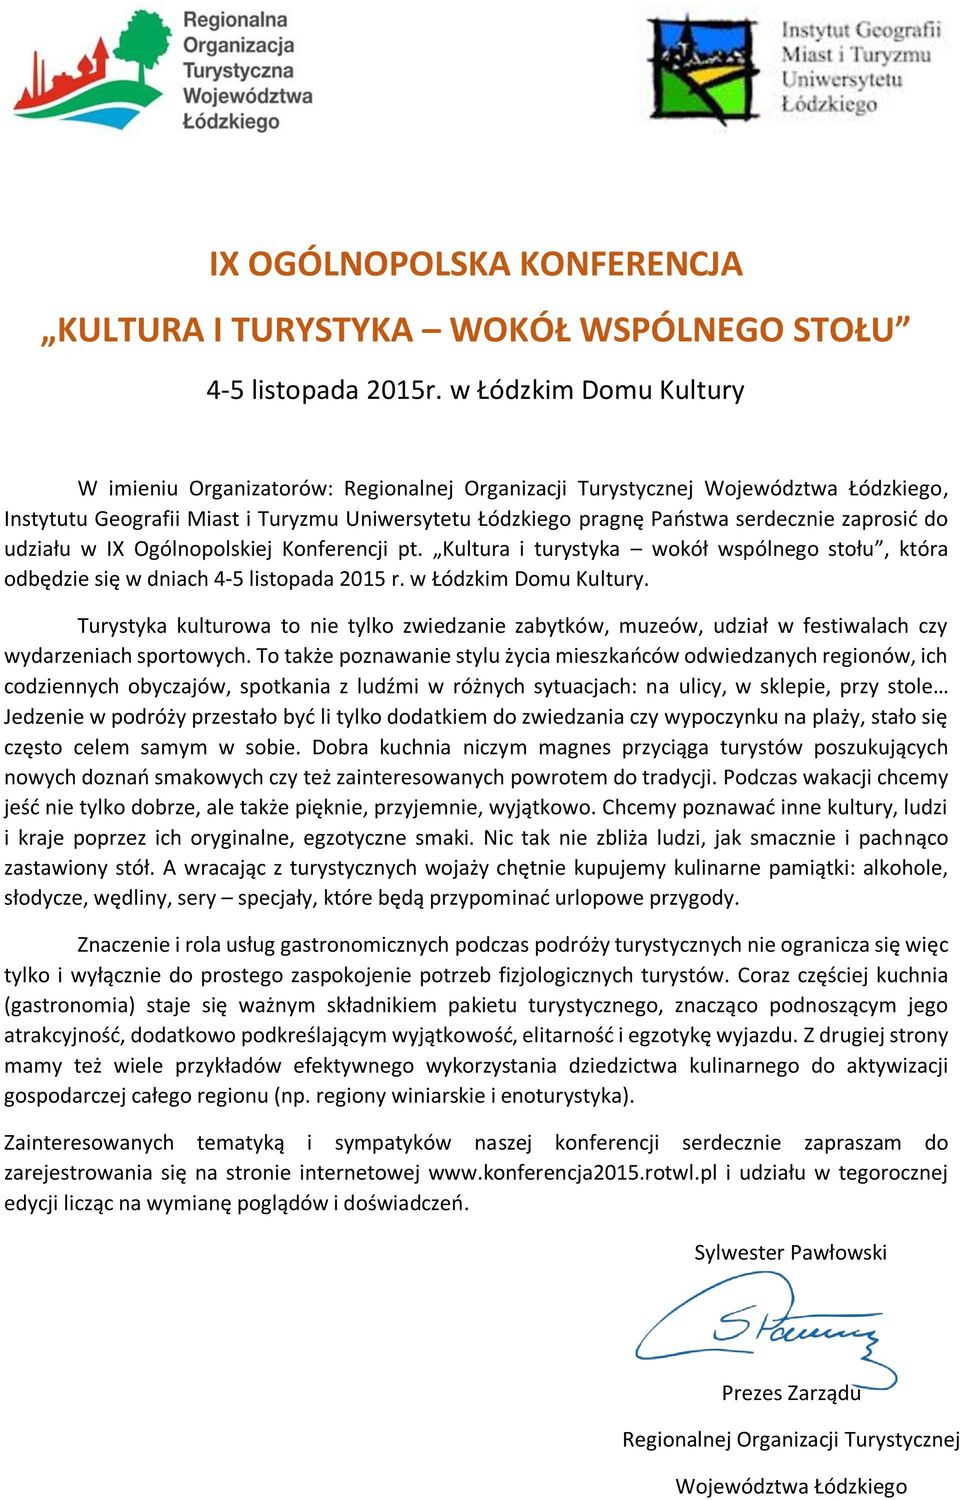 zaprosić do udziału w IX Ogólnopolskiej Konferencji pt. Kultura i turystyka wokół wspólnego stołu, która odbędzie się w dniach 4-5 listopada 2015 r. w Łódzkim Domu Kultury.